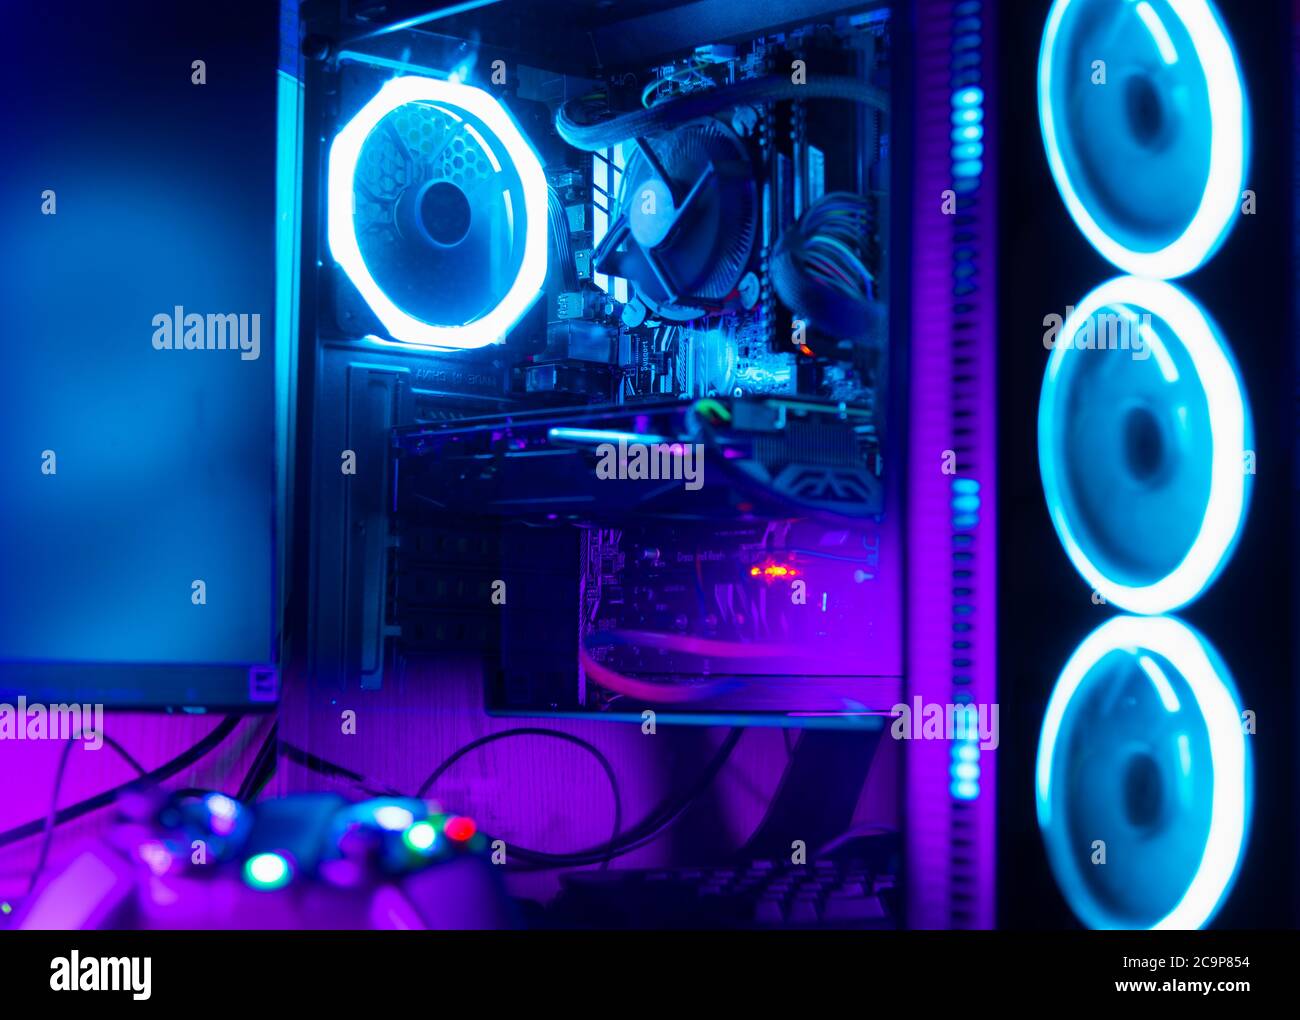 PC-Gehäuse aus Glas mit rgb-Beleuchtung und Schreibtisch mit Gamepad im  Vordergrund Stockfotografie - Alamy